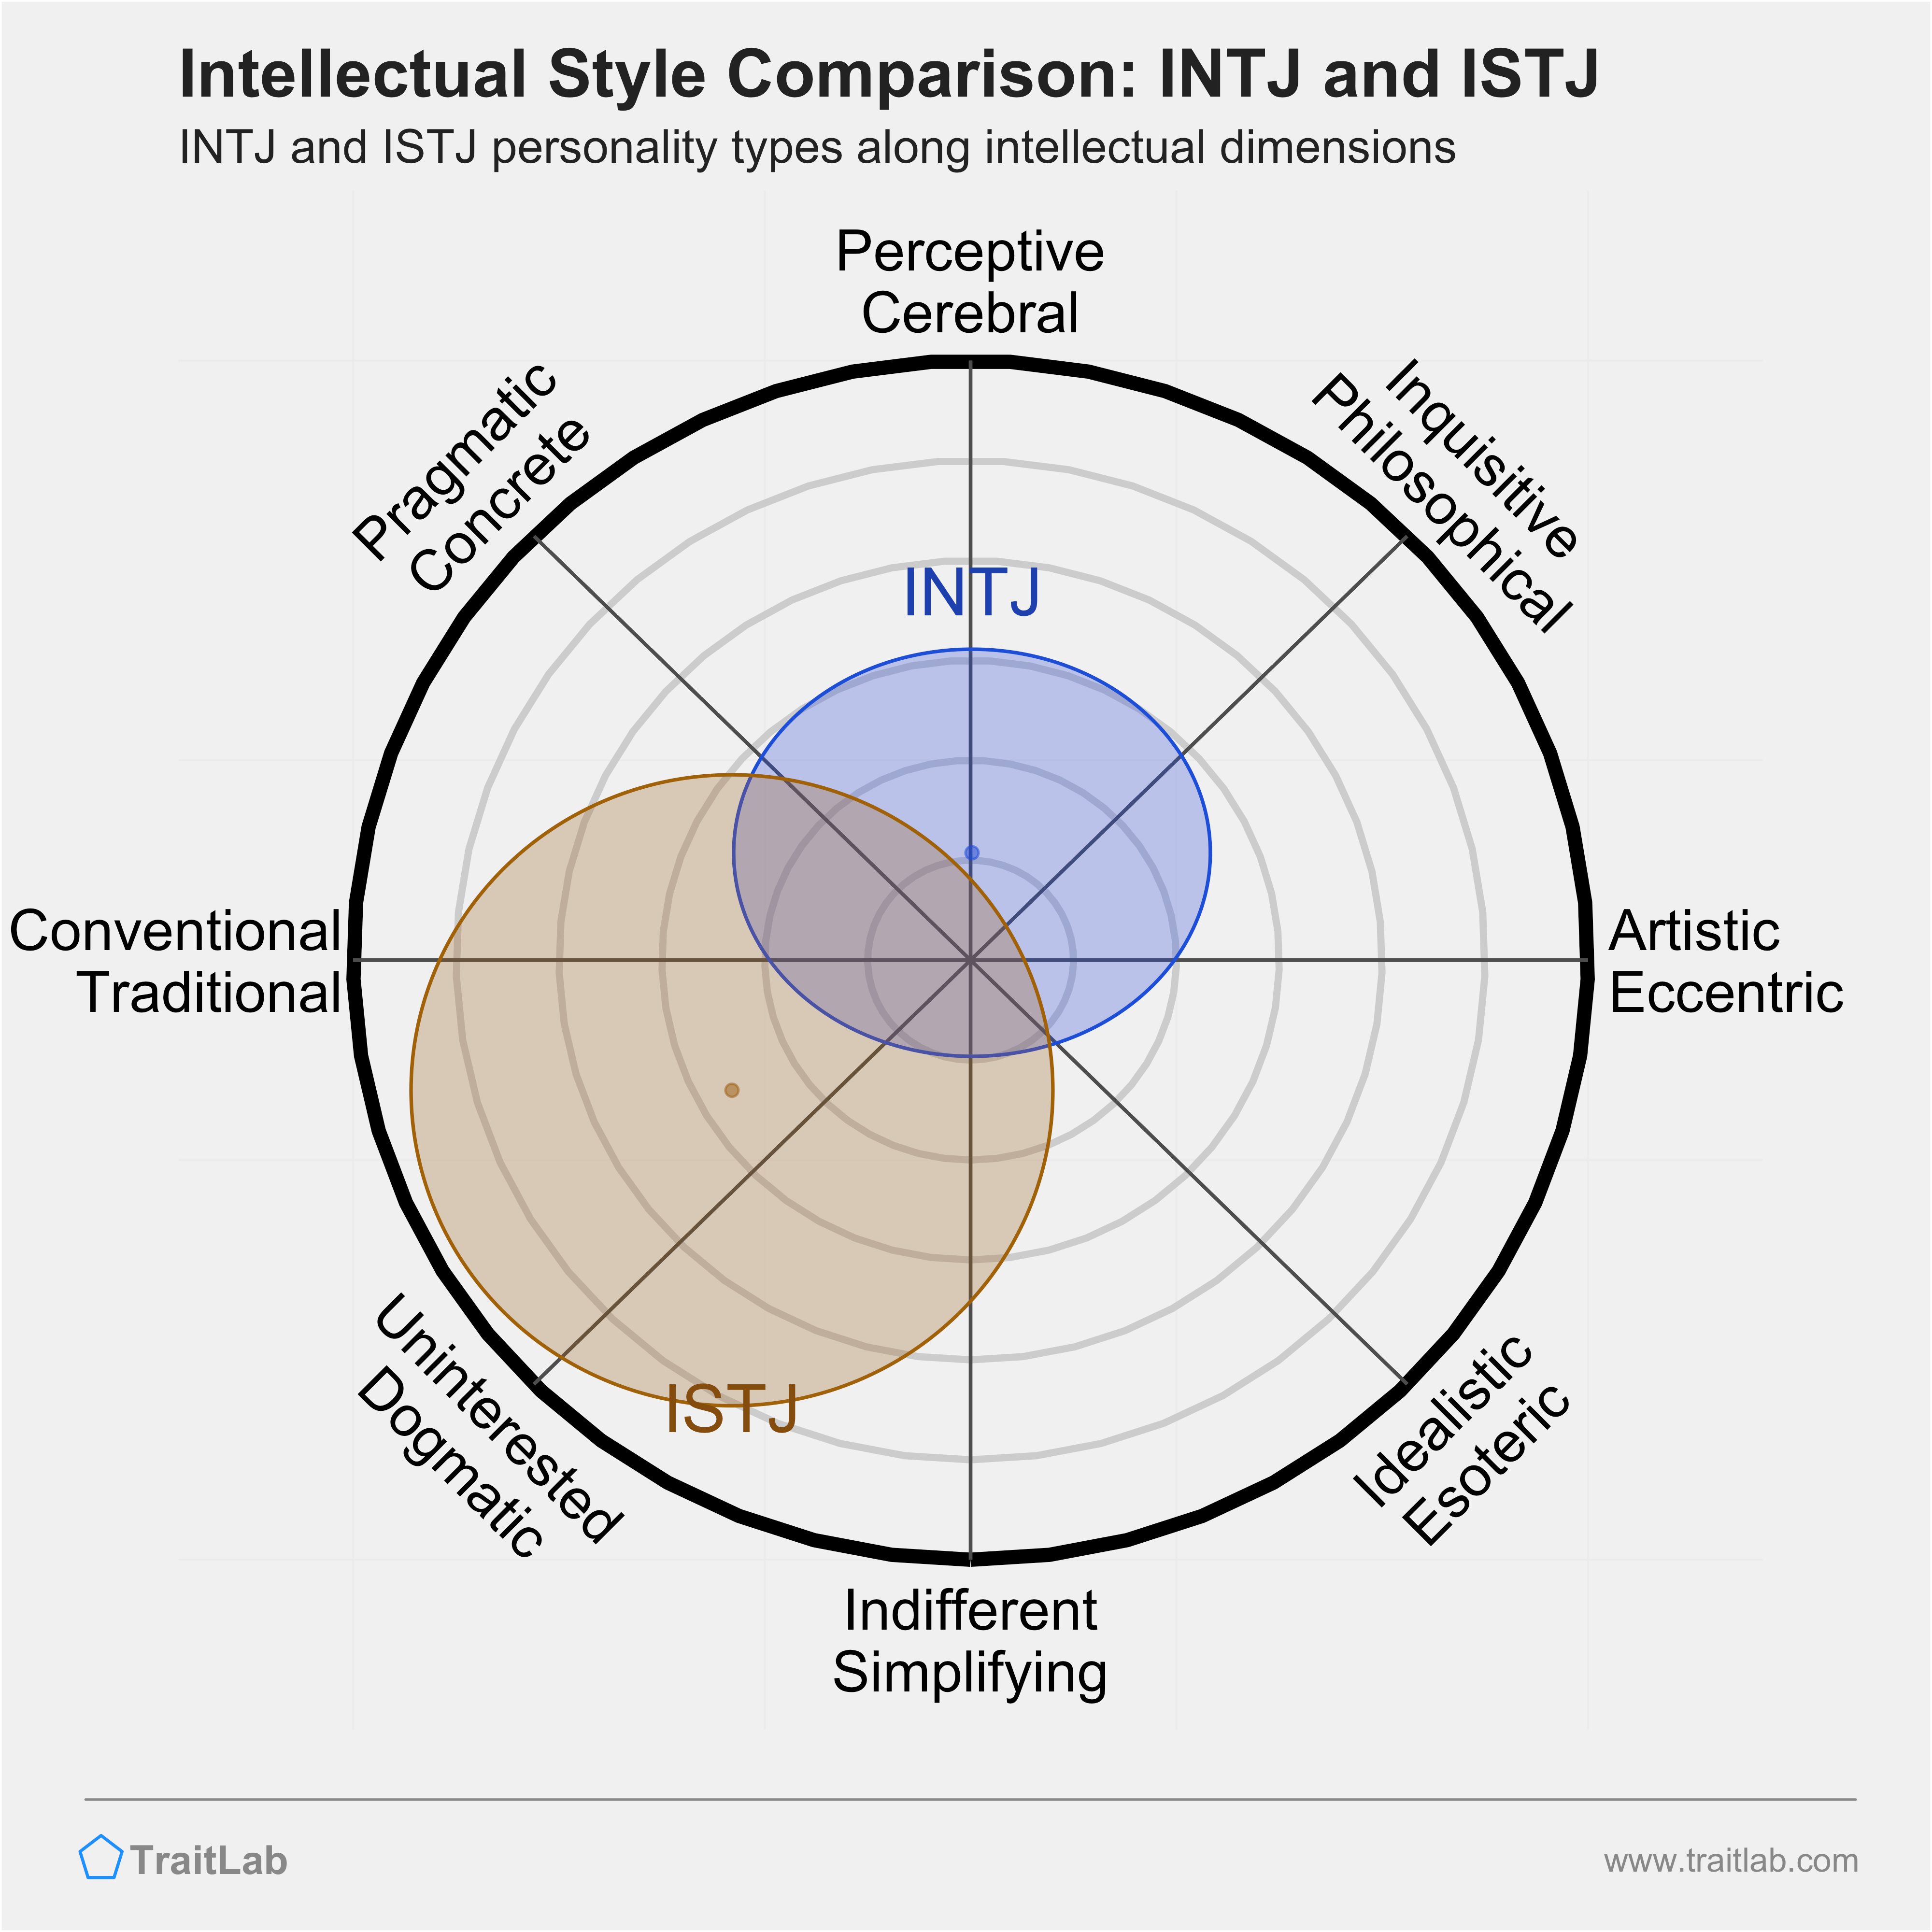 INTJ and ISTJ comparison across intellectual dimensions